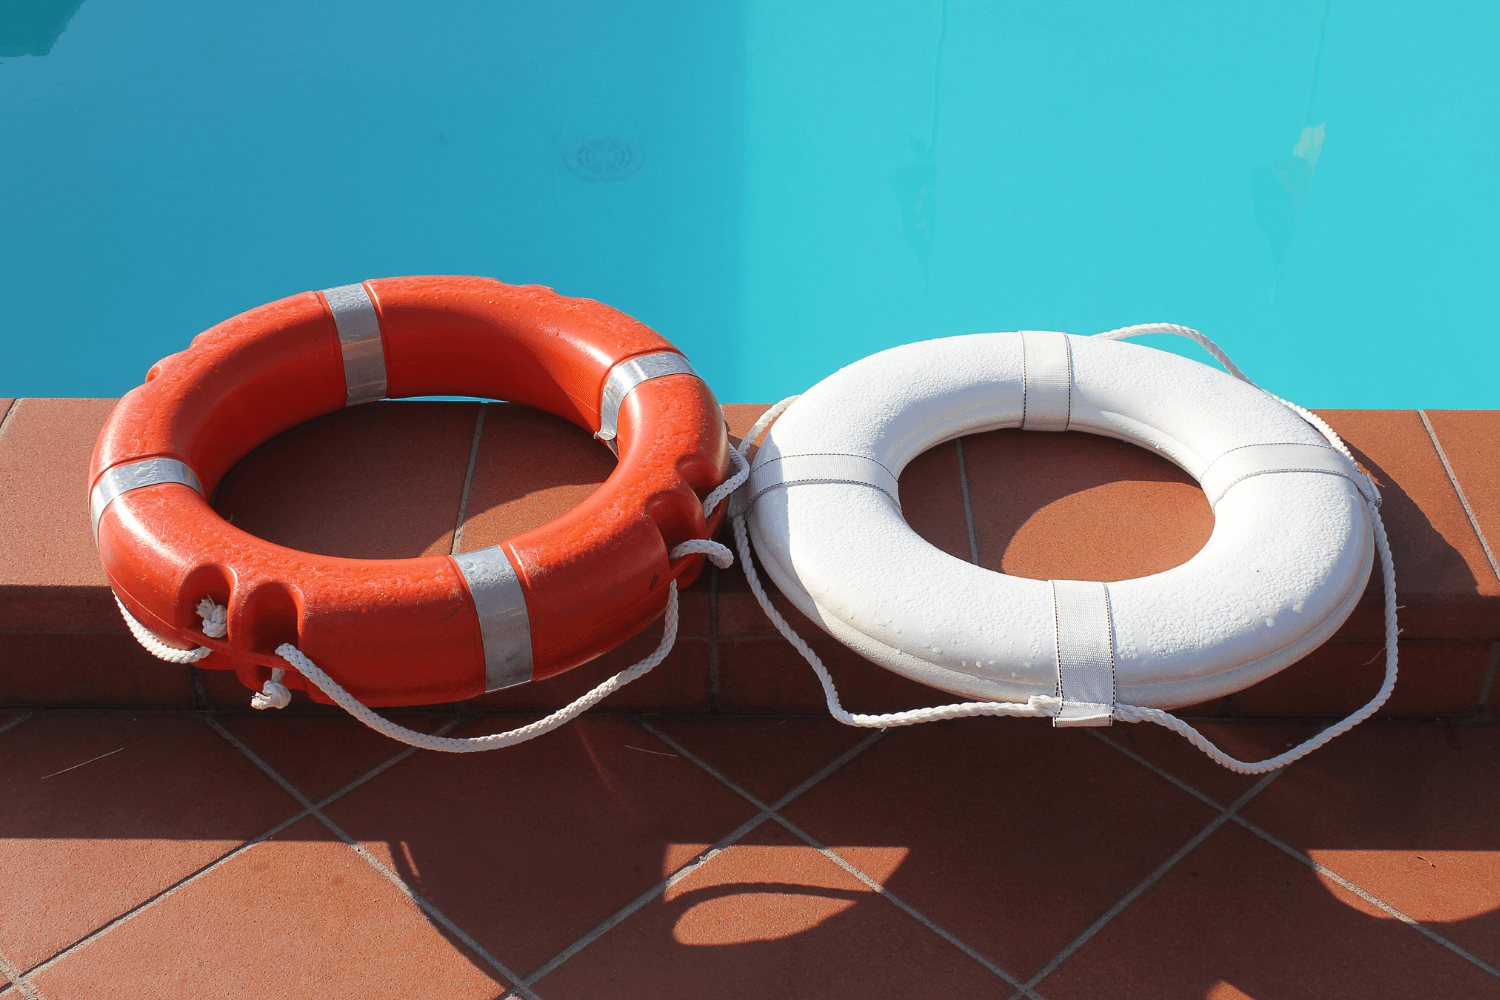 White and orange life saving buoys sitting poolside